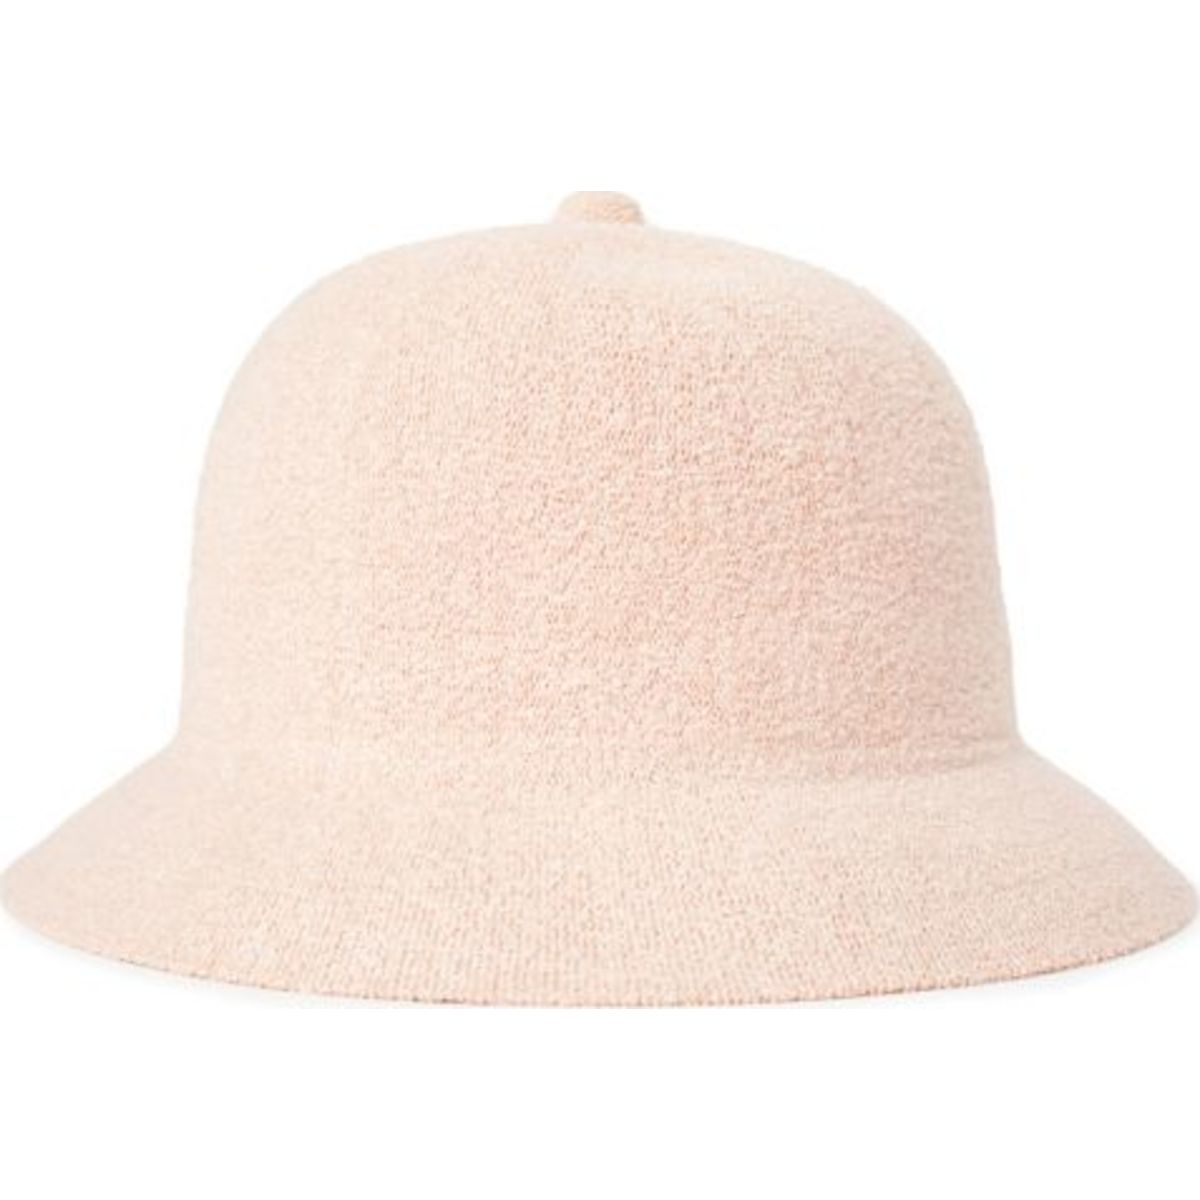 Essex III Bucket Hat - Black